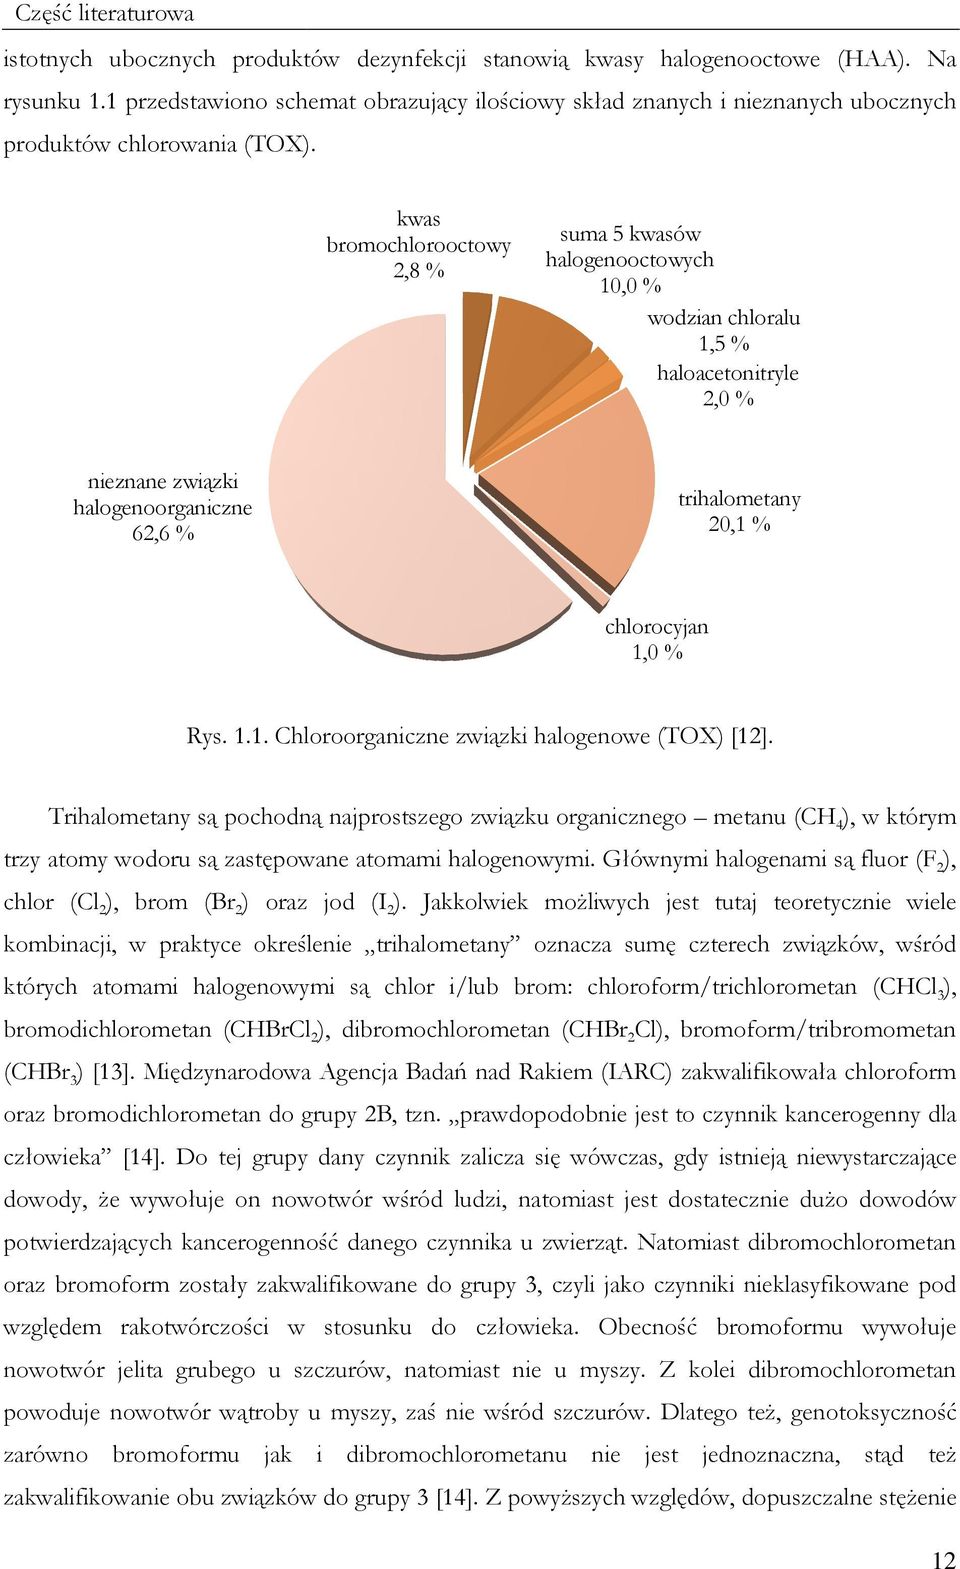 kwas bromochlorooctowy 2,8 % suma 5 kwasów halogenooctowych 1, % wodzian chloralu 1,5 % haloacetonitryle 2, % nieznane związki halogenoorganiczne 62,6 % trihalometany 2,1 % chlorocyjan 1, % Rys. 1.1. Chloroorganiczne związki halogenowe (TOX) [12].